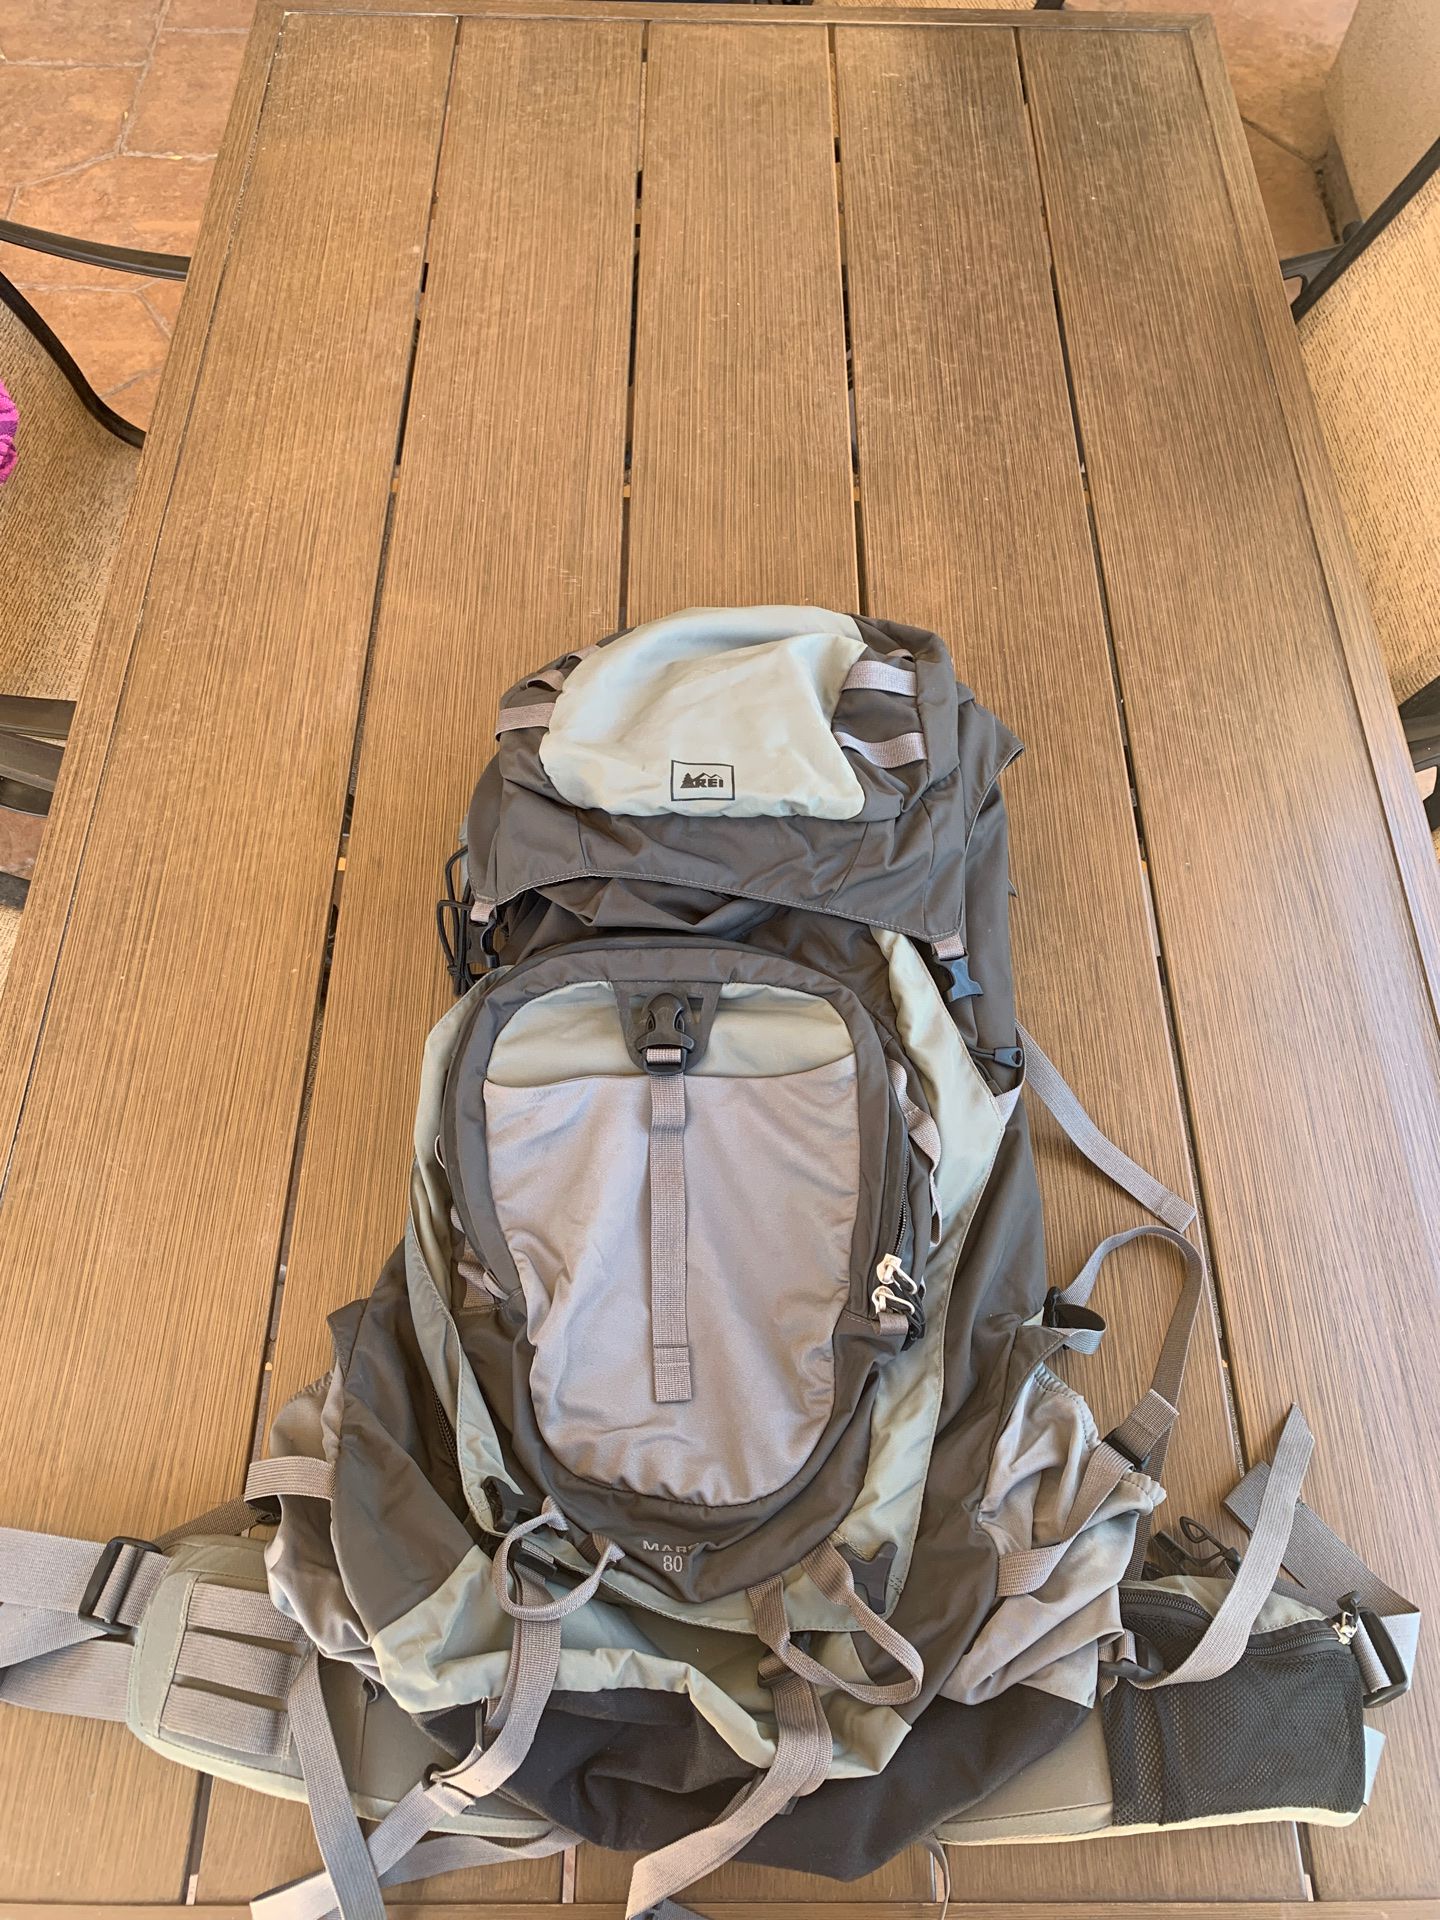 Big Rei hiking backpack